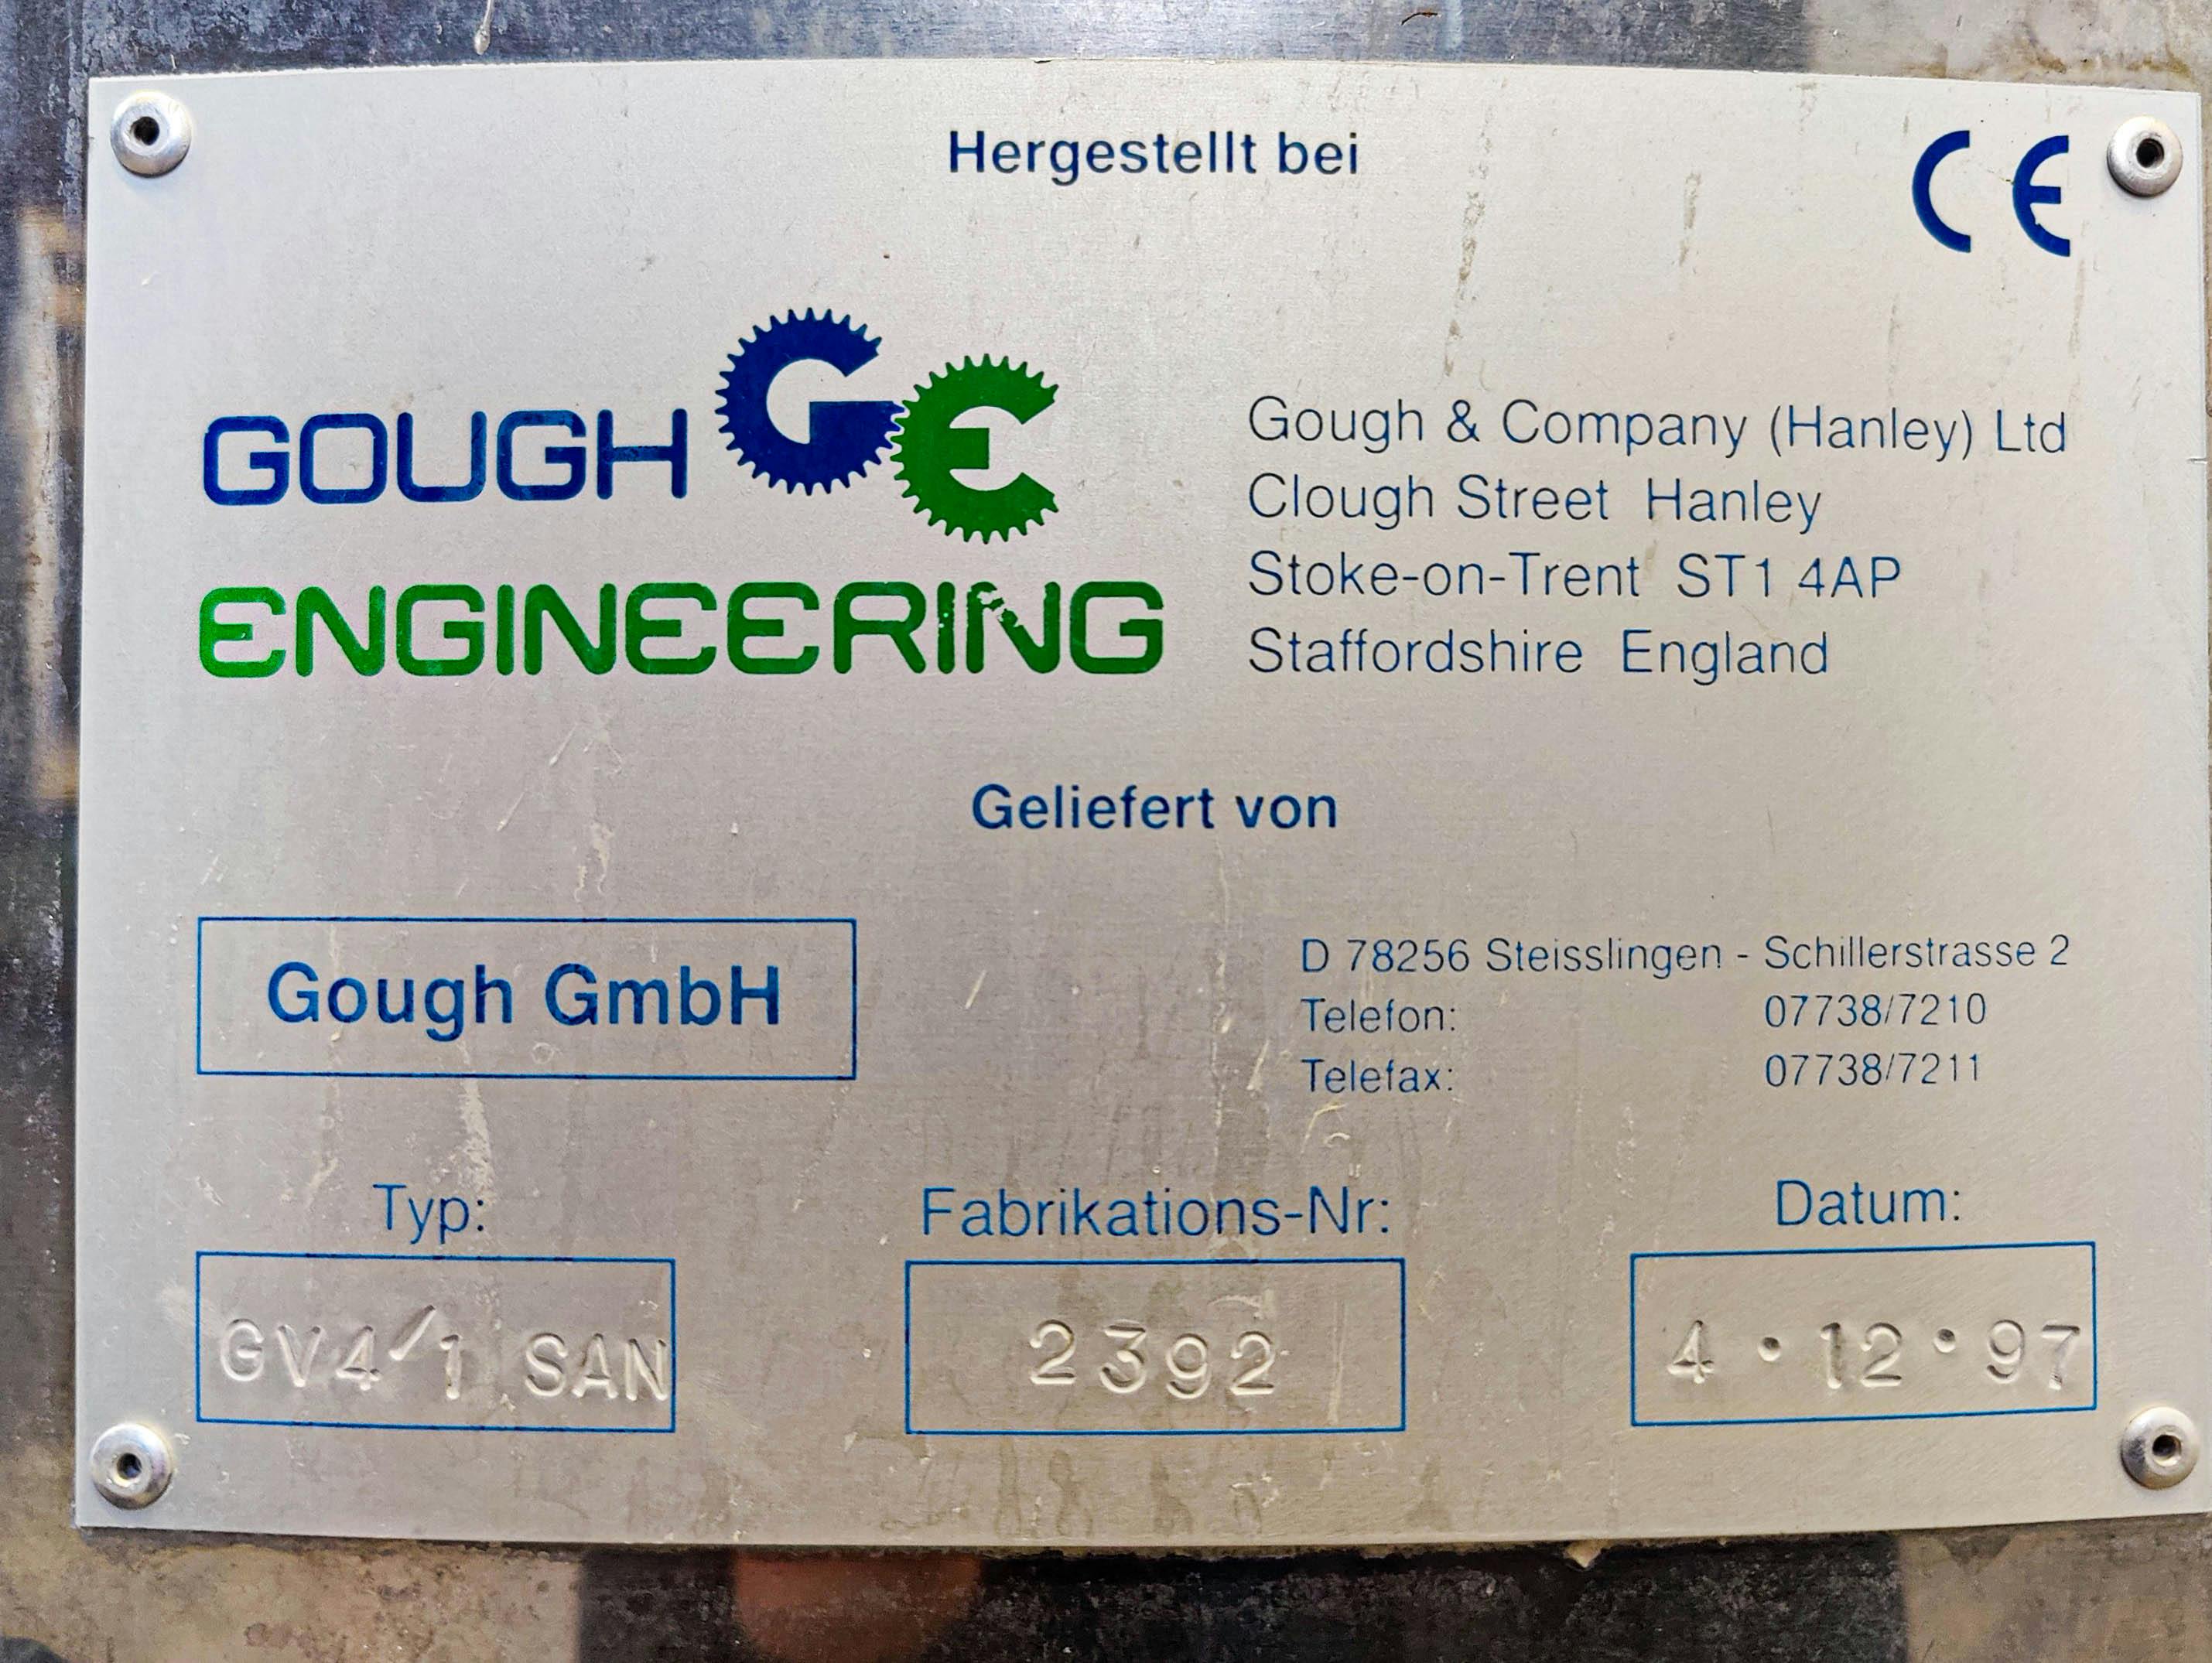 Gough & Co GV4/1 SAN - Peneira vibratória - image 9